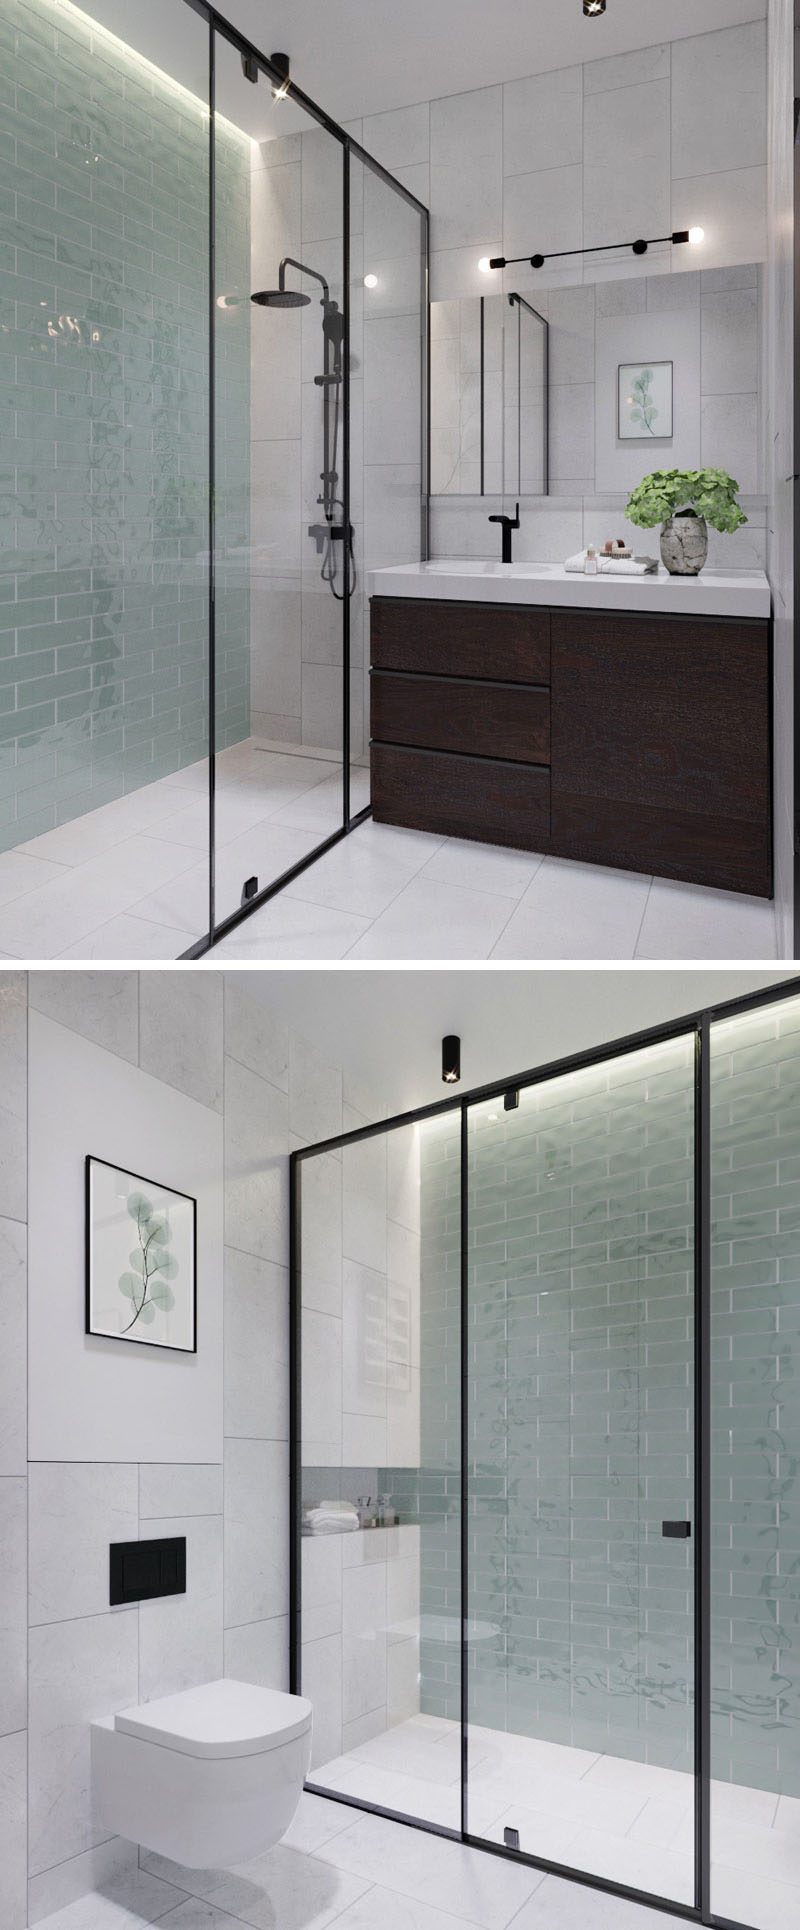 В этой современной ванной комнате светло-зеленая плитка от пола до потолка добавляет мягкие оттенки цветному интерьеру в черно-белых тонах и дереве. В душевой кабине со стеклянной рамкой в ​​черной рамке есть скрытое освещение, которое добавляет в ванную комнату успокаивающего сияния. # Современная ванная # Дизайн ванной